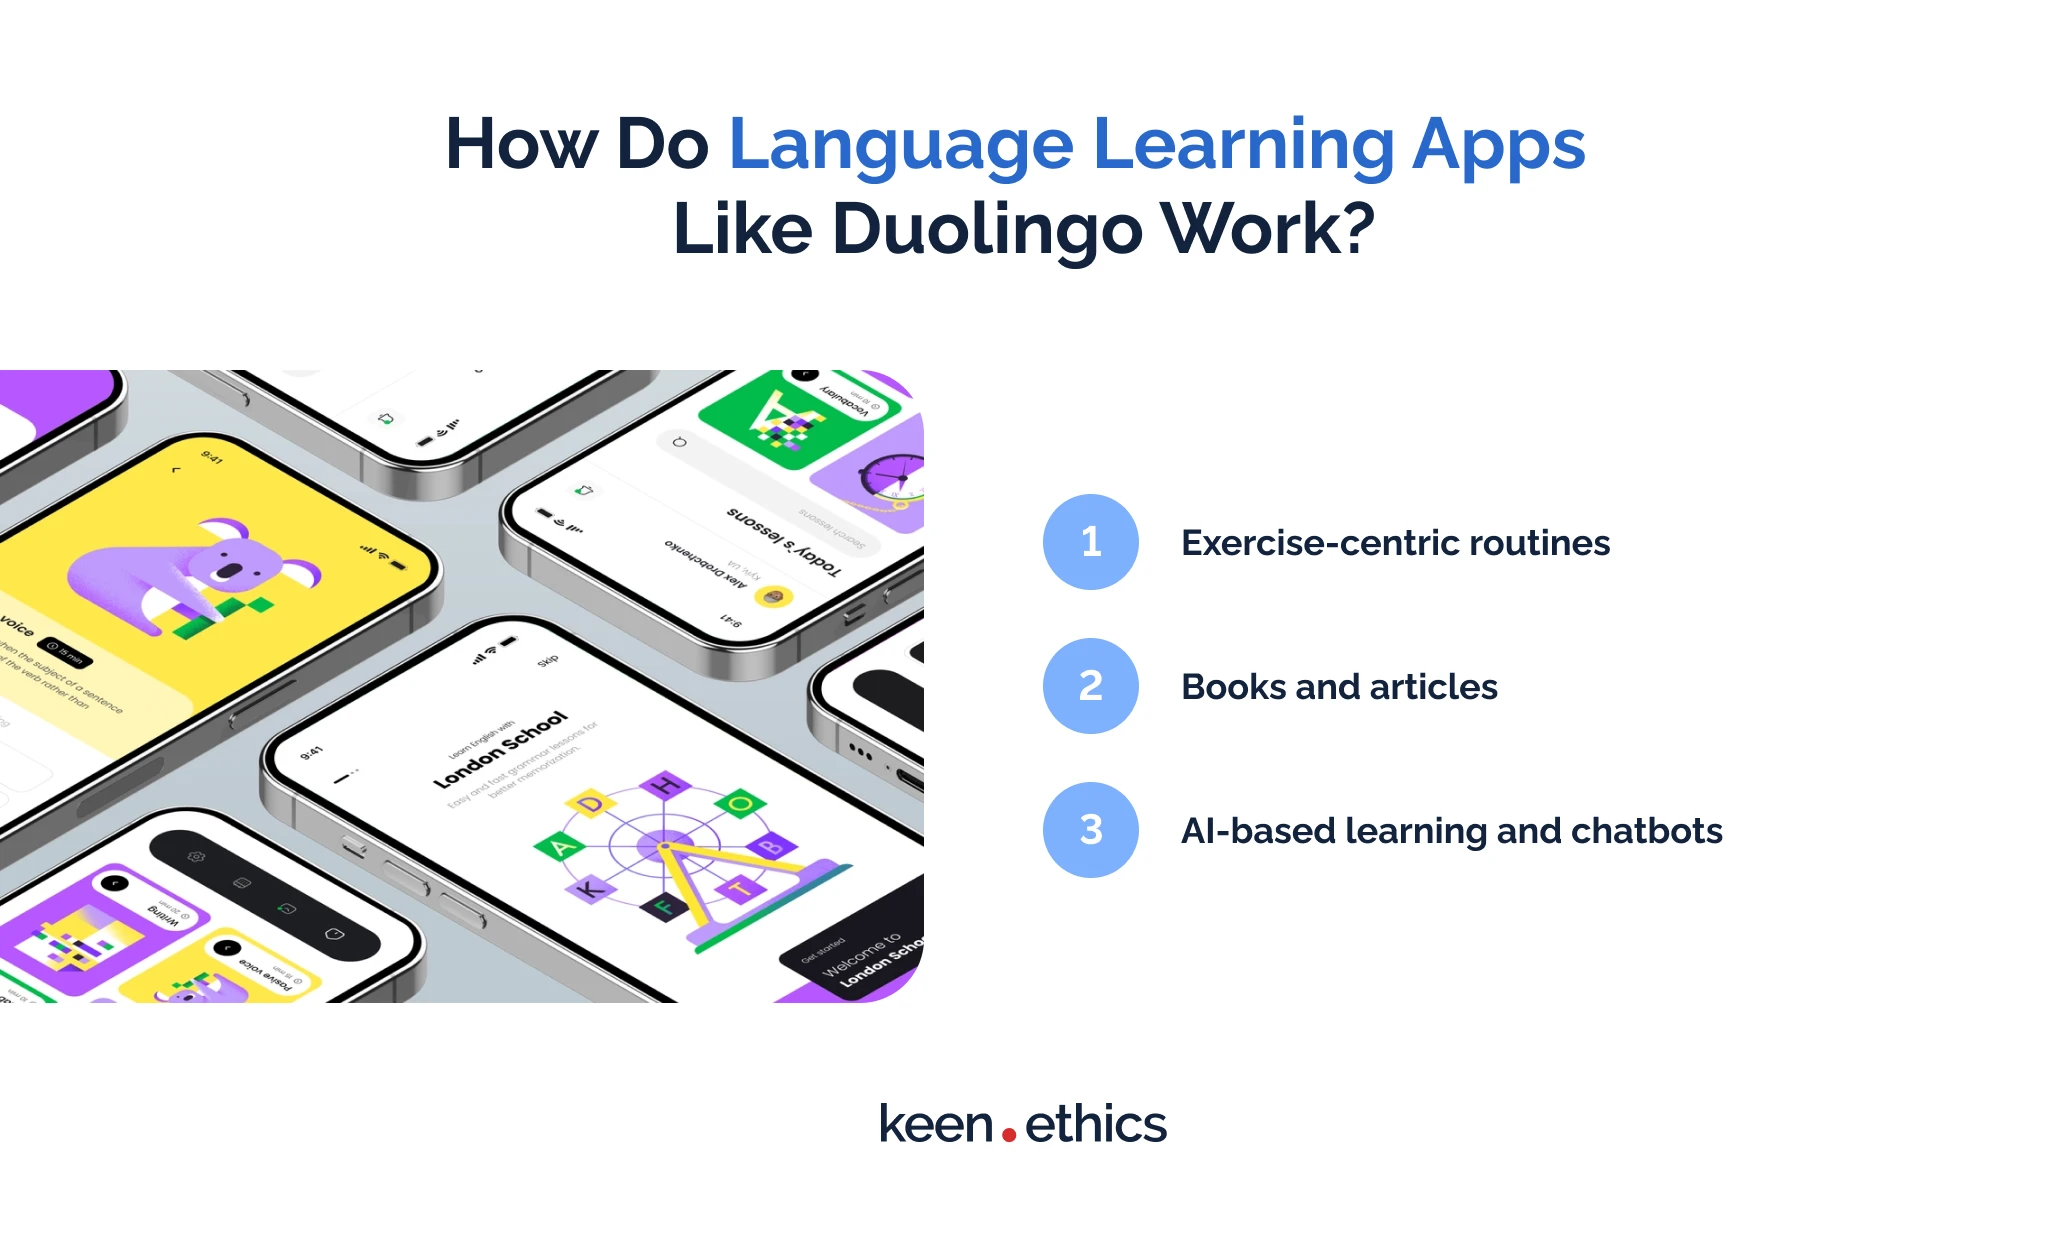 How do Language Learning Apps Like Duolingo Work?